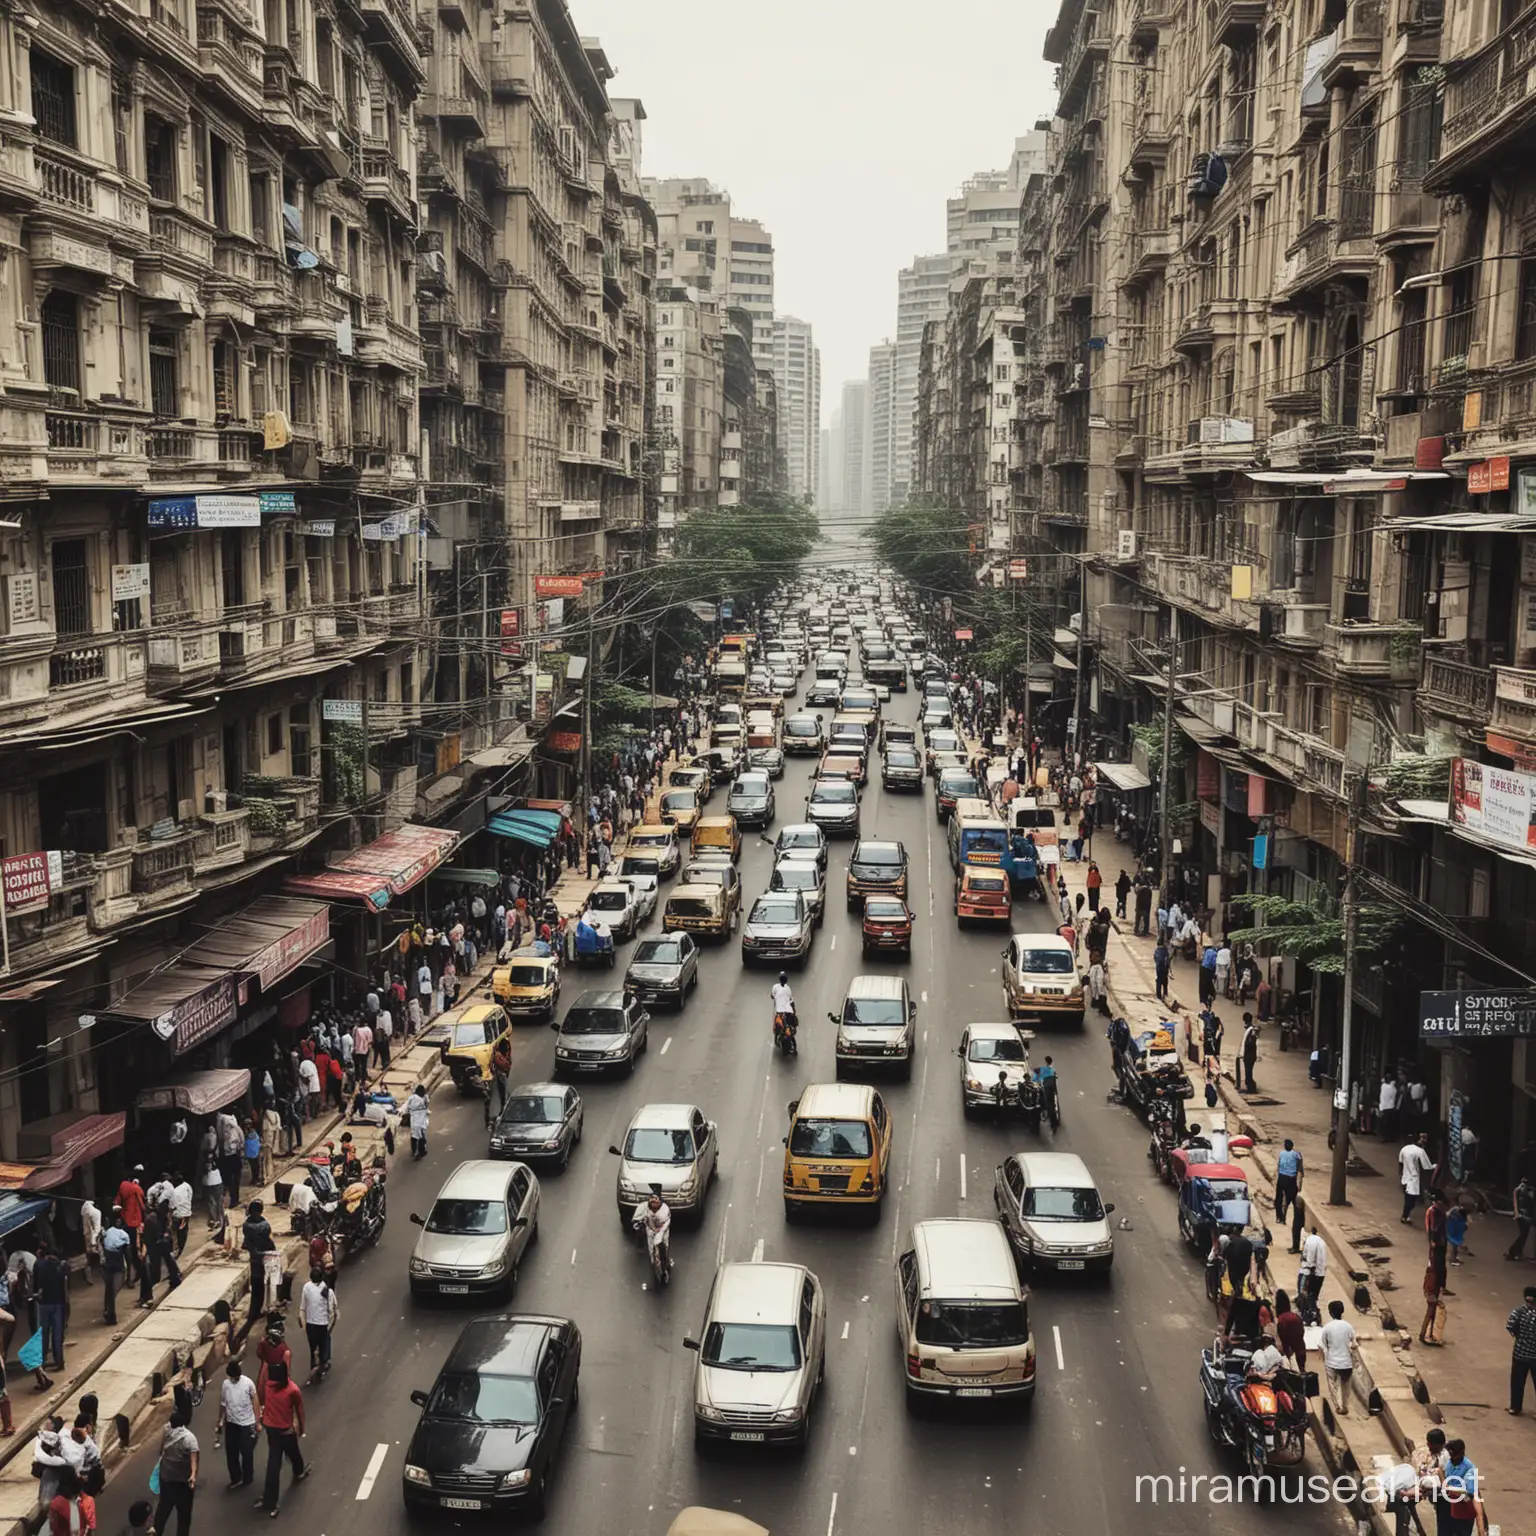 Scene of Mumbai streets